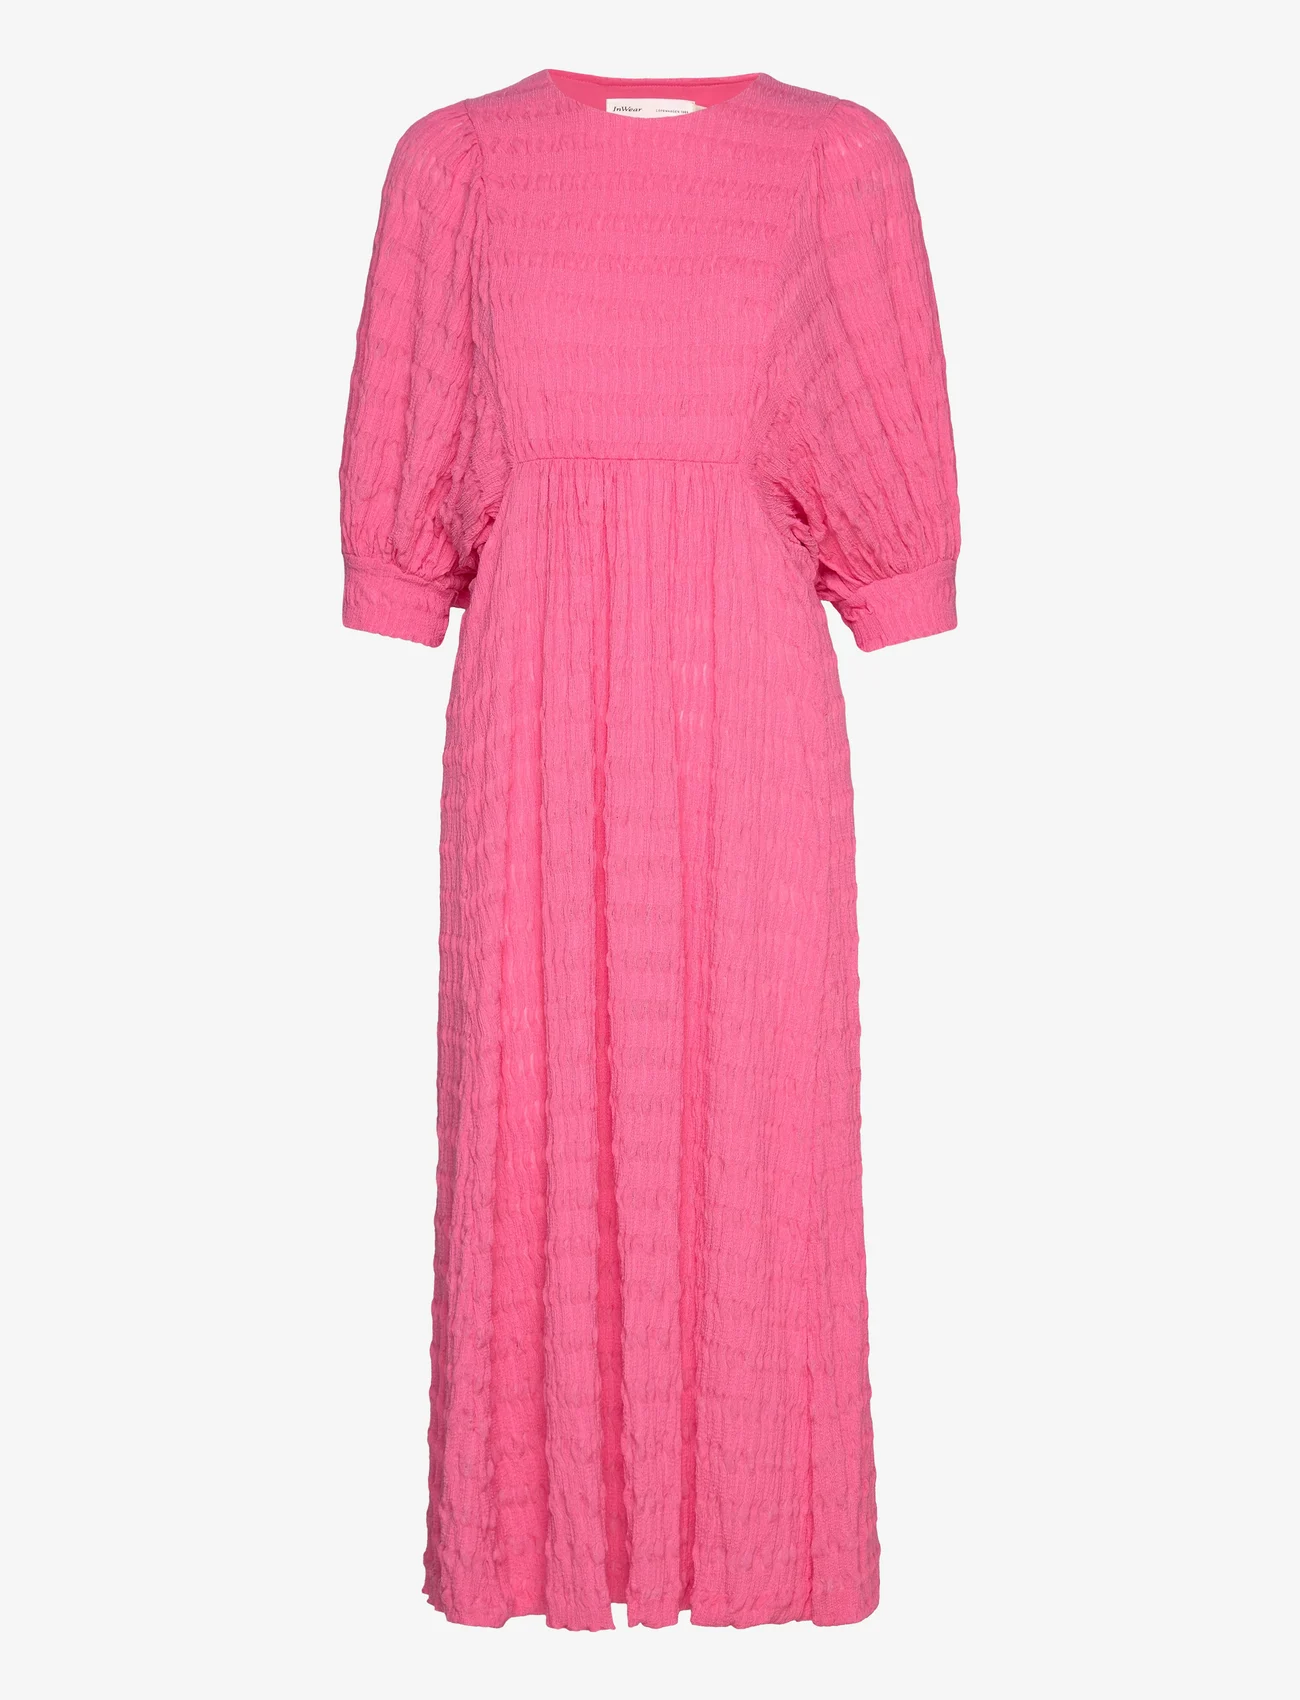 InWear - ZabelleIW Dress - summer dresses - pink rose - 0